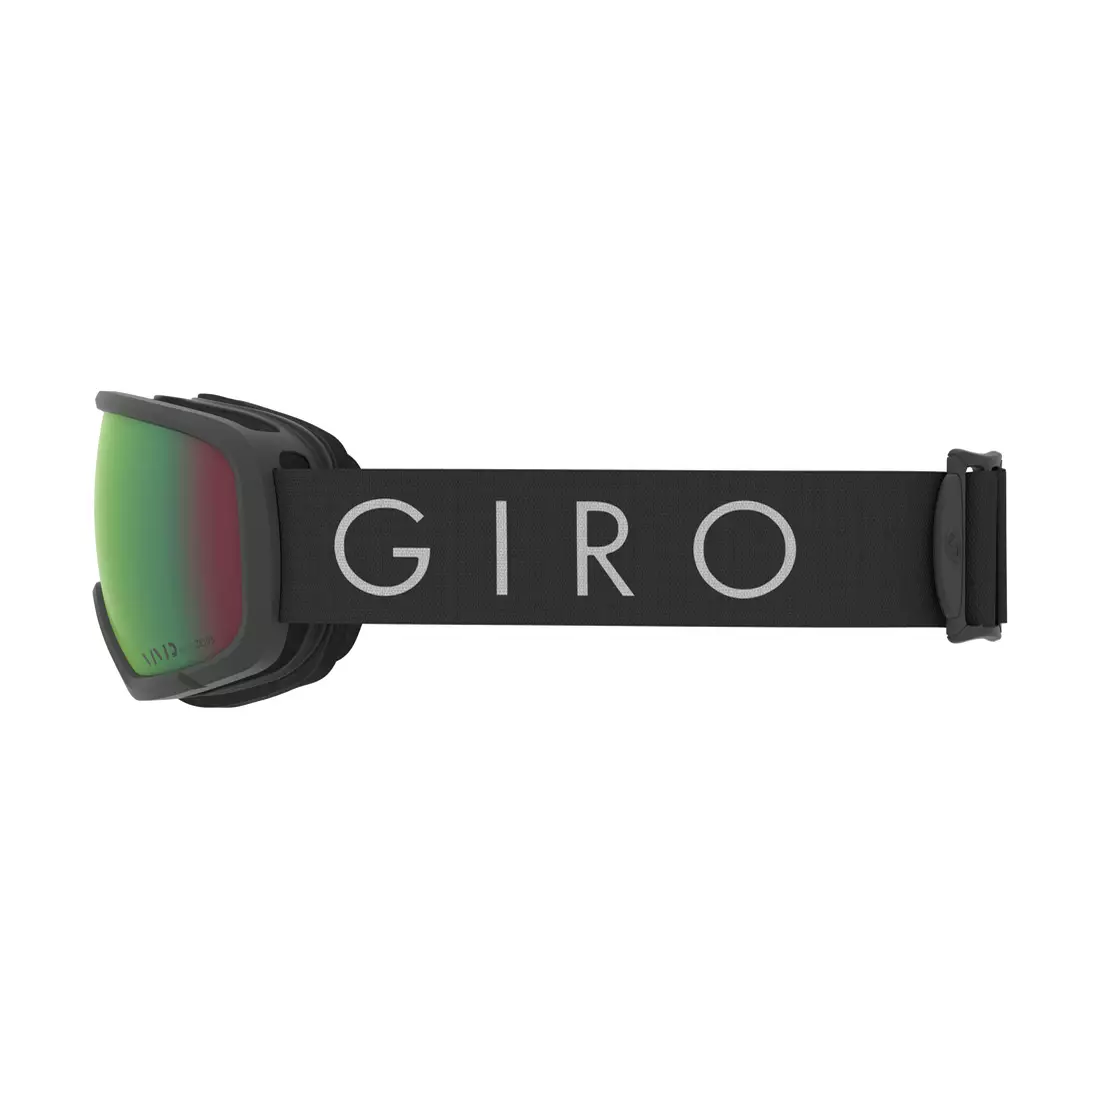 GIRO dámské zimní lyžařské/snowboardové brýle millie titanové jádro lehké (VIVID EMERALD 22% S2) GR-7119833